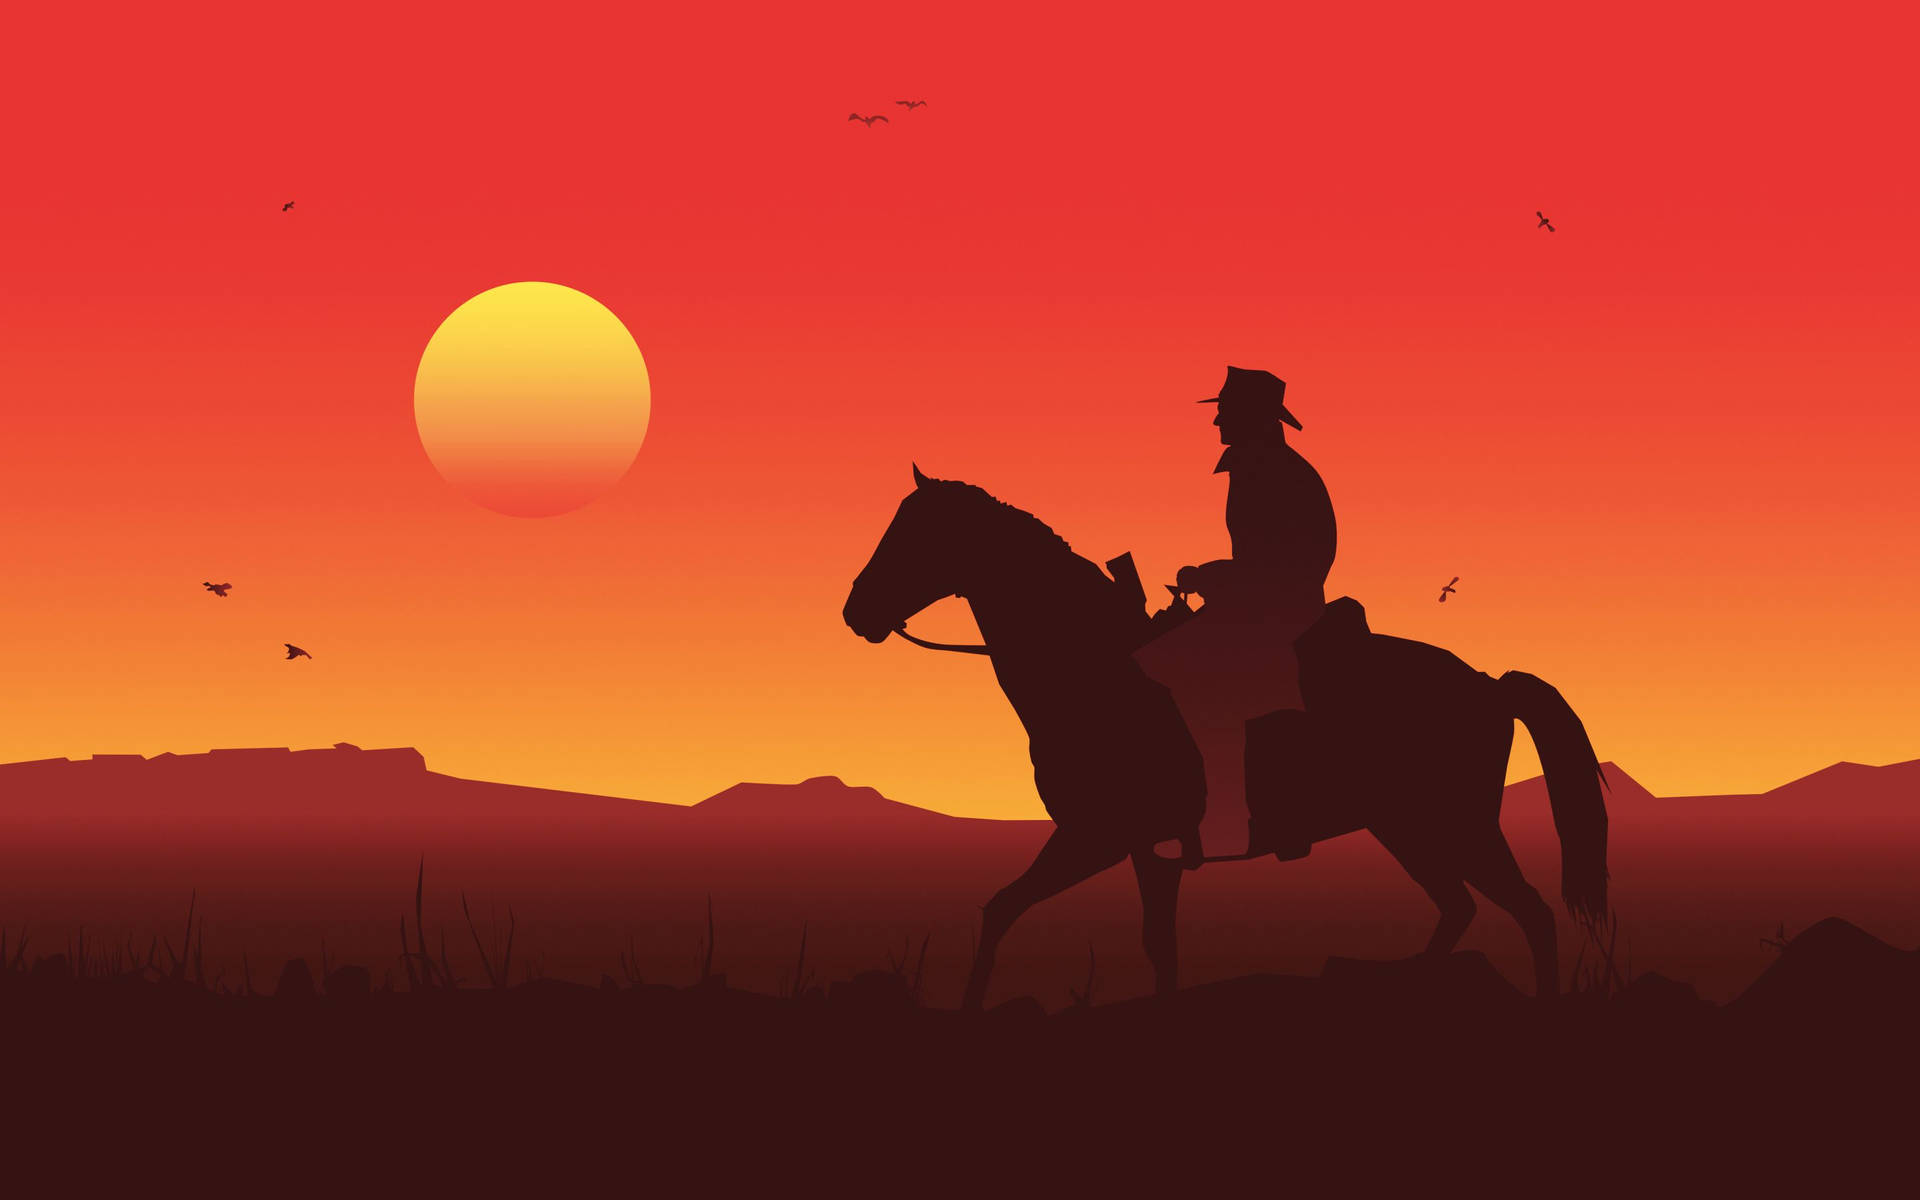 Reitemit Deinem Pferd Aus Red Dead Redemption 2 In Den Sonnenuntergang. Wallpaper